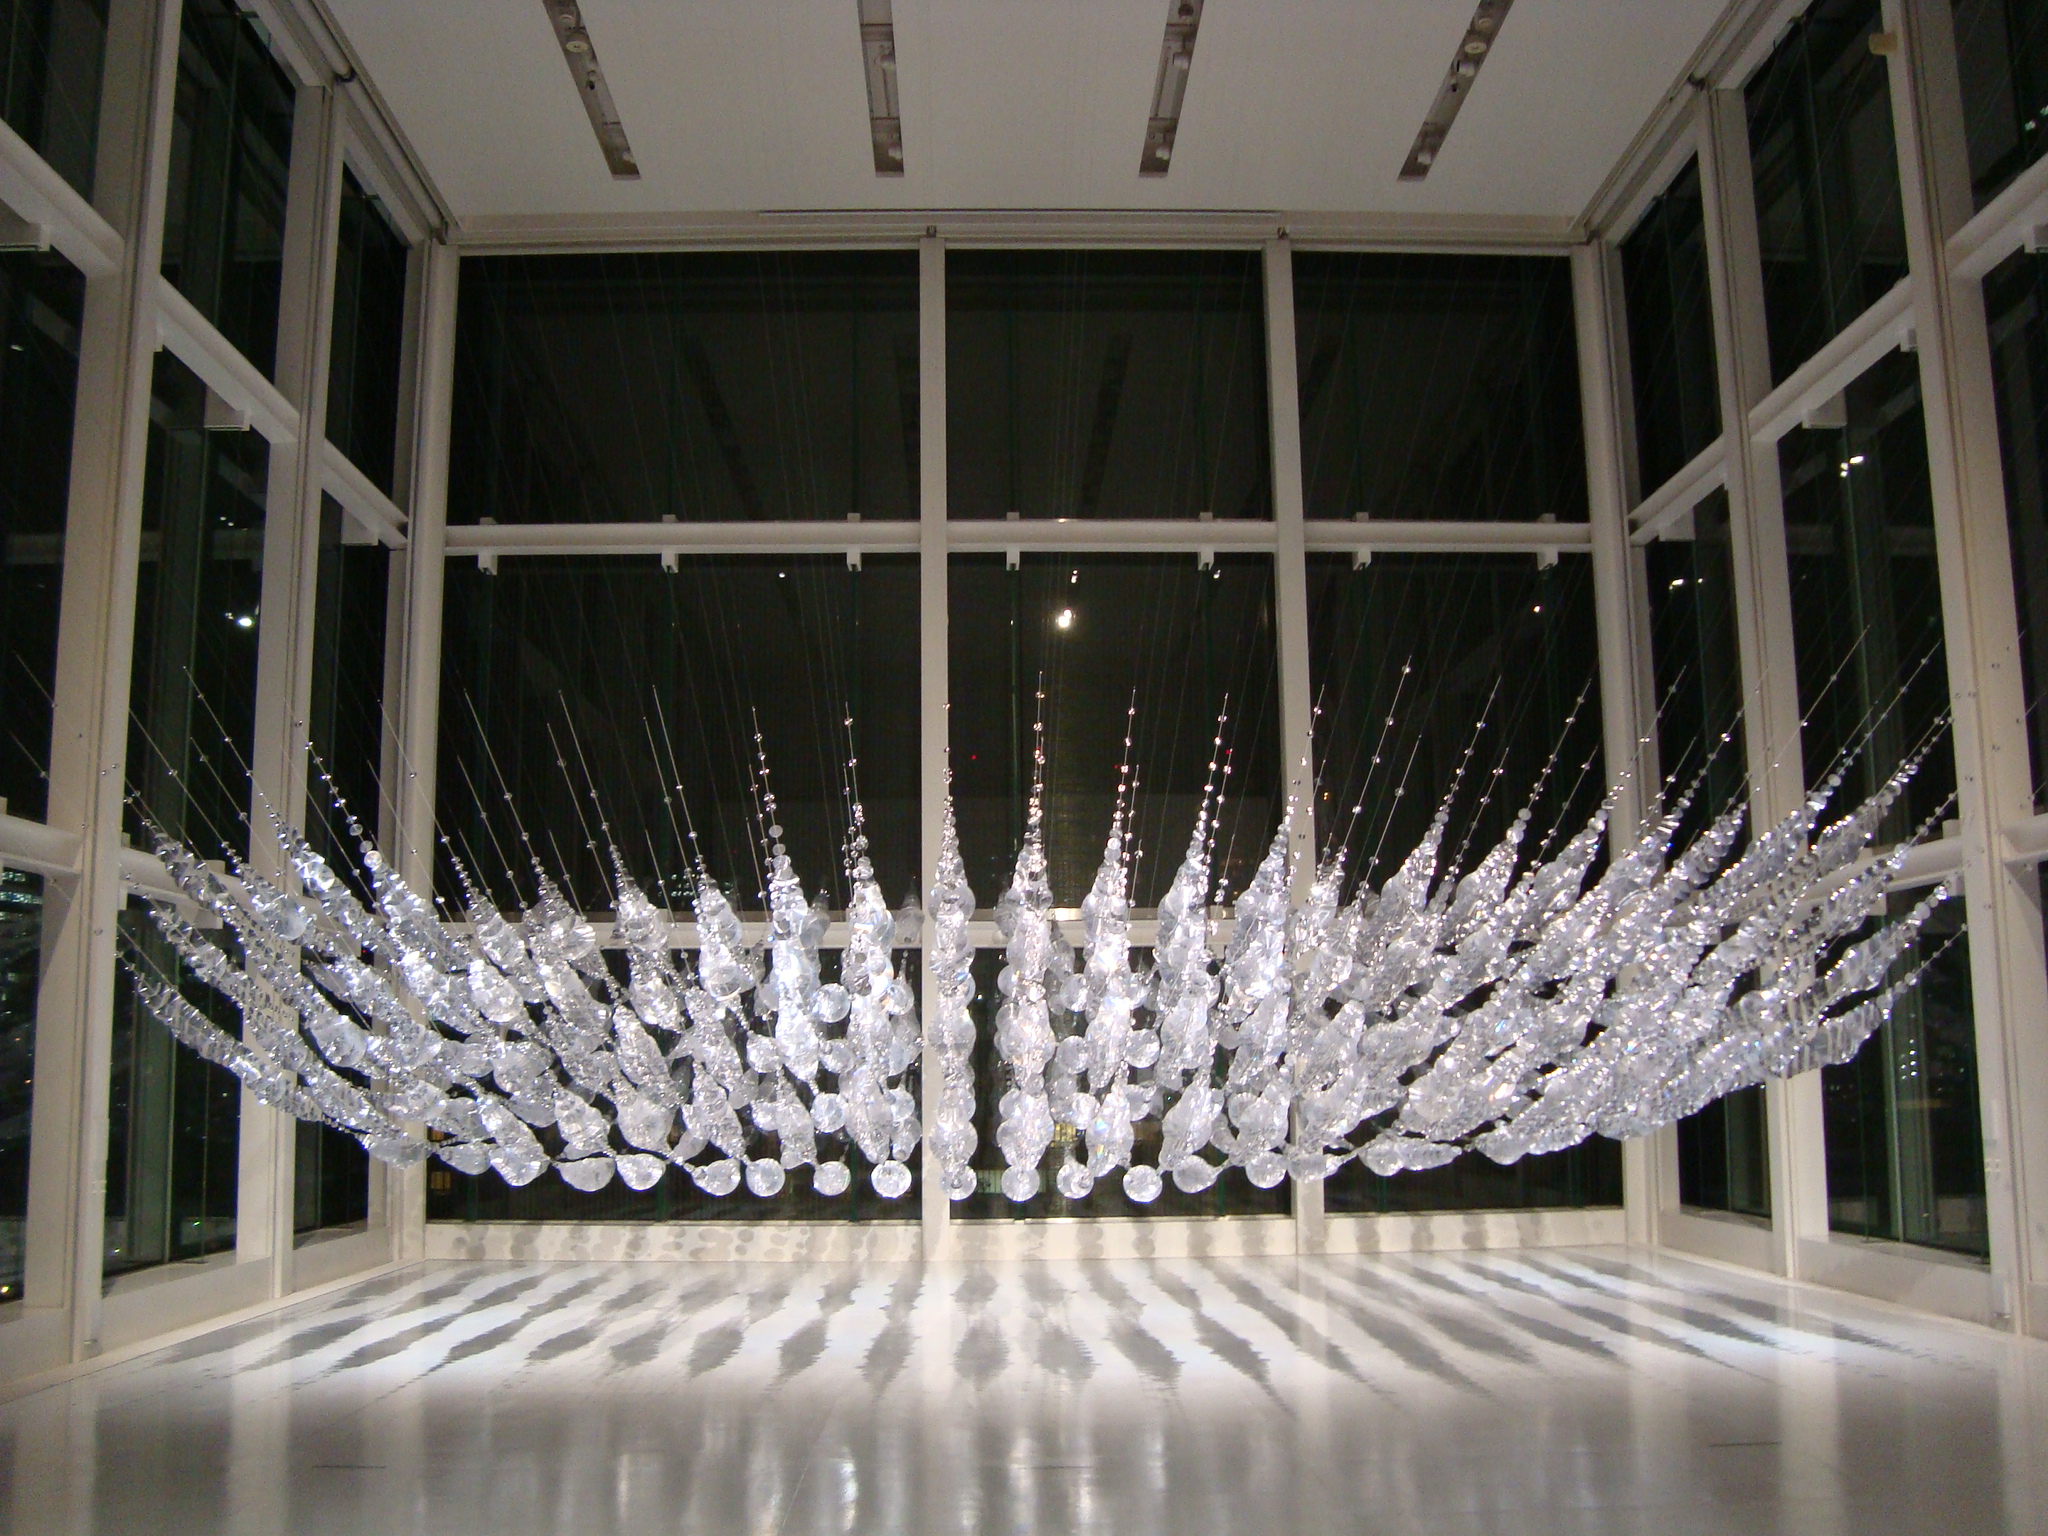 Espace Louis Vuitton Tokyo  Space art, Installation art, Fabric art